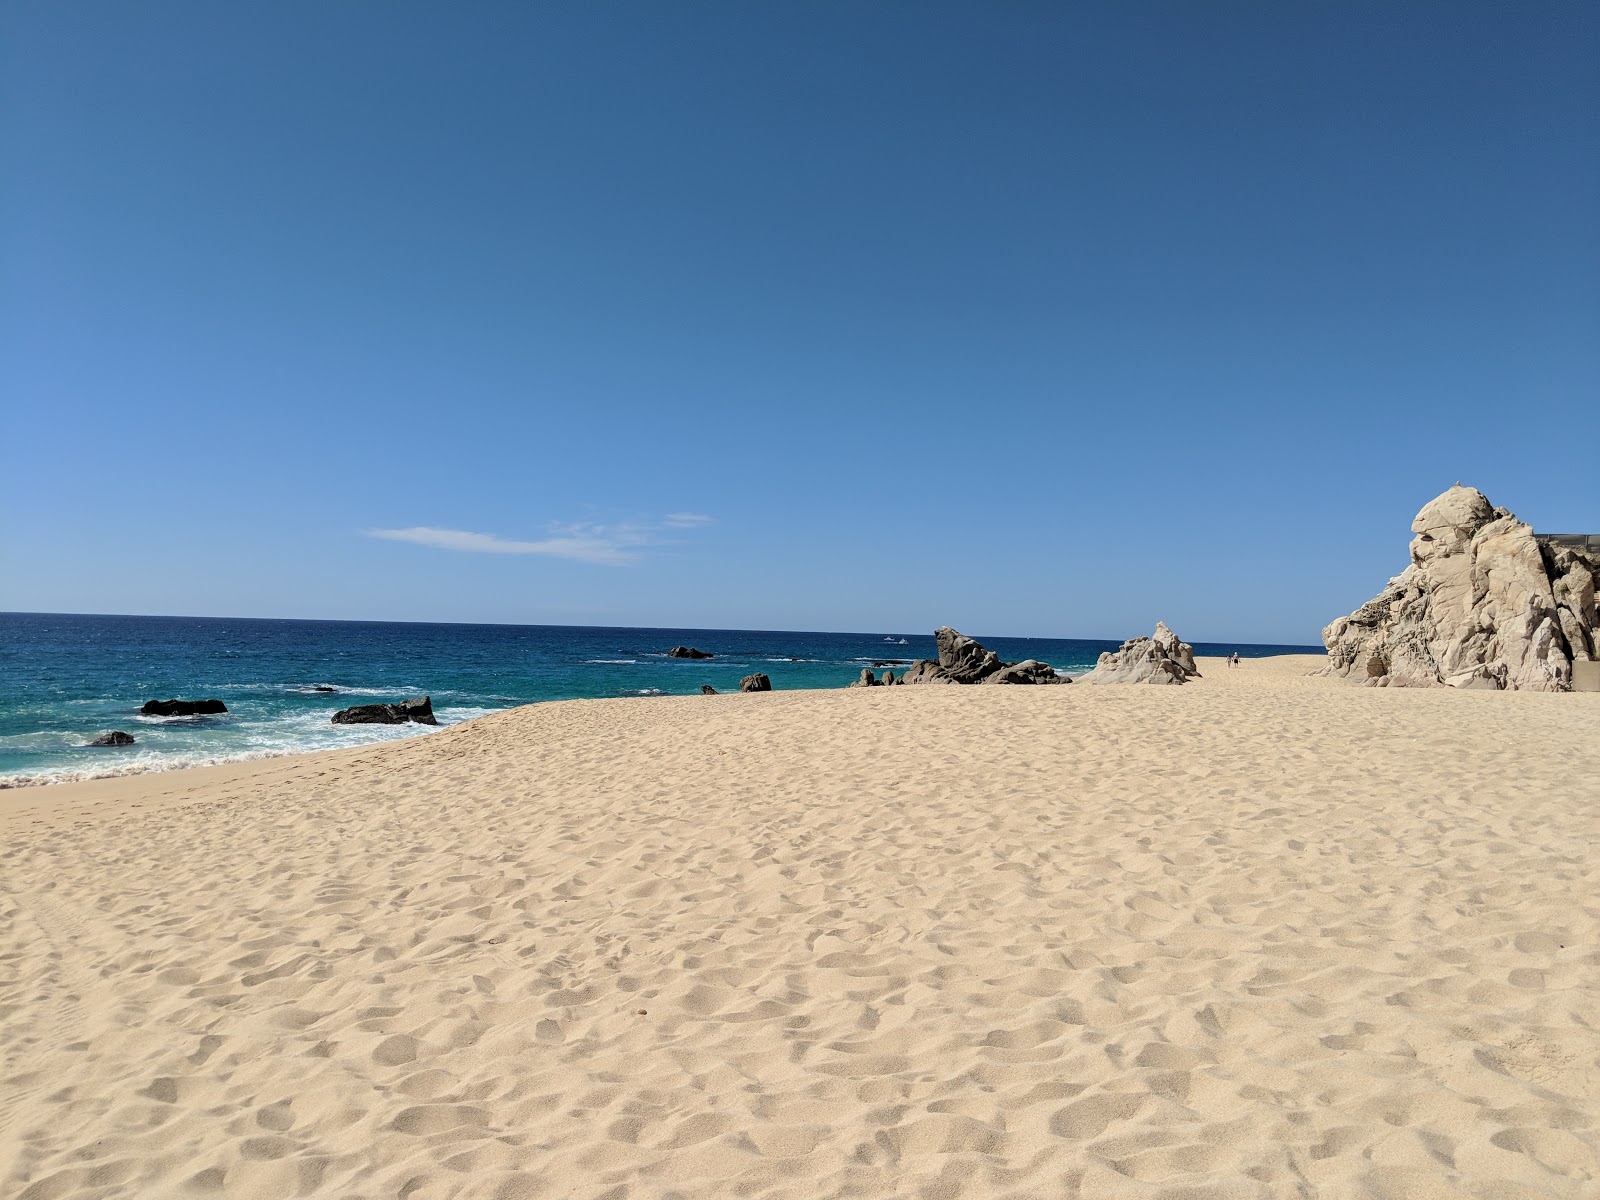 Fotografie cu Pedregal Playa - locul popular printre cunoscătorii de relaxare